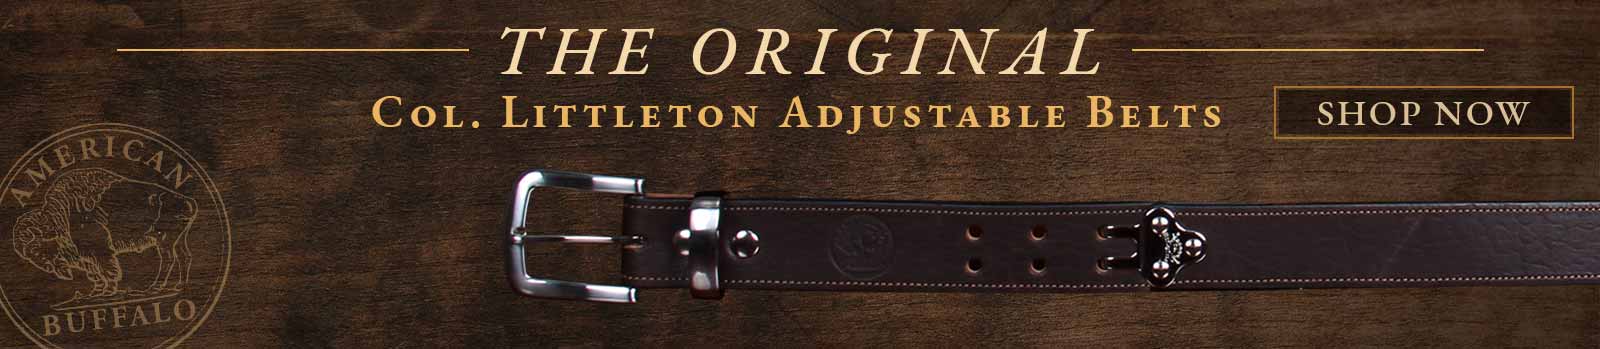 The Original Col. Littleton Adjustable Belt - click here to shop now